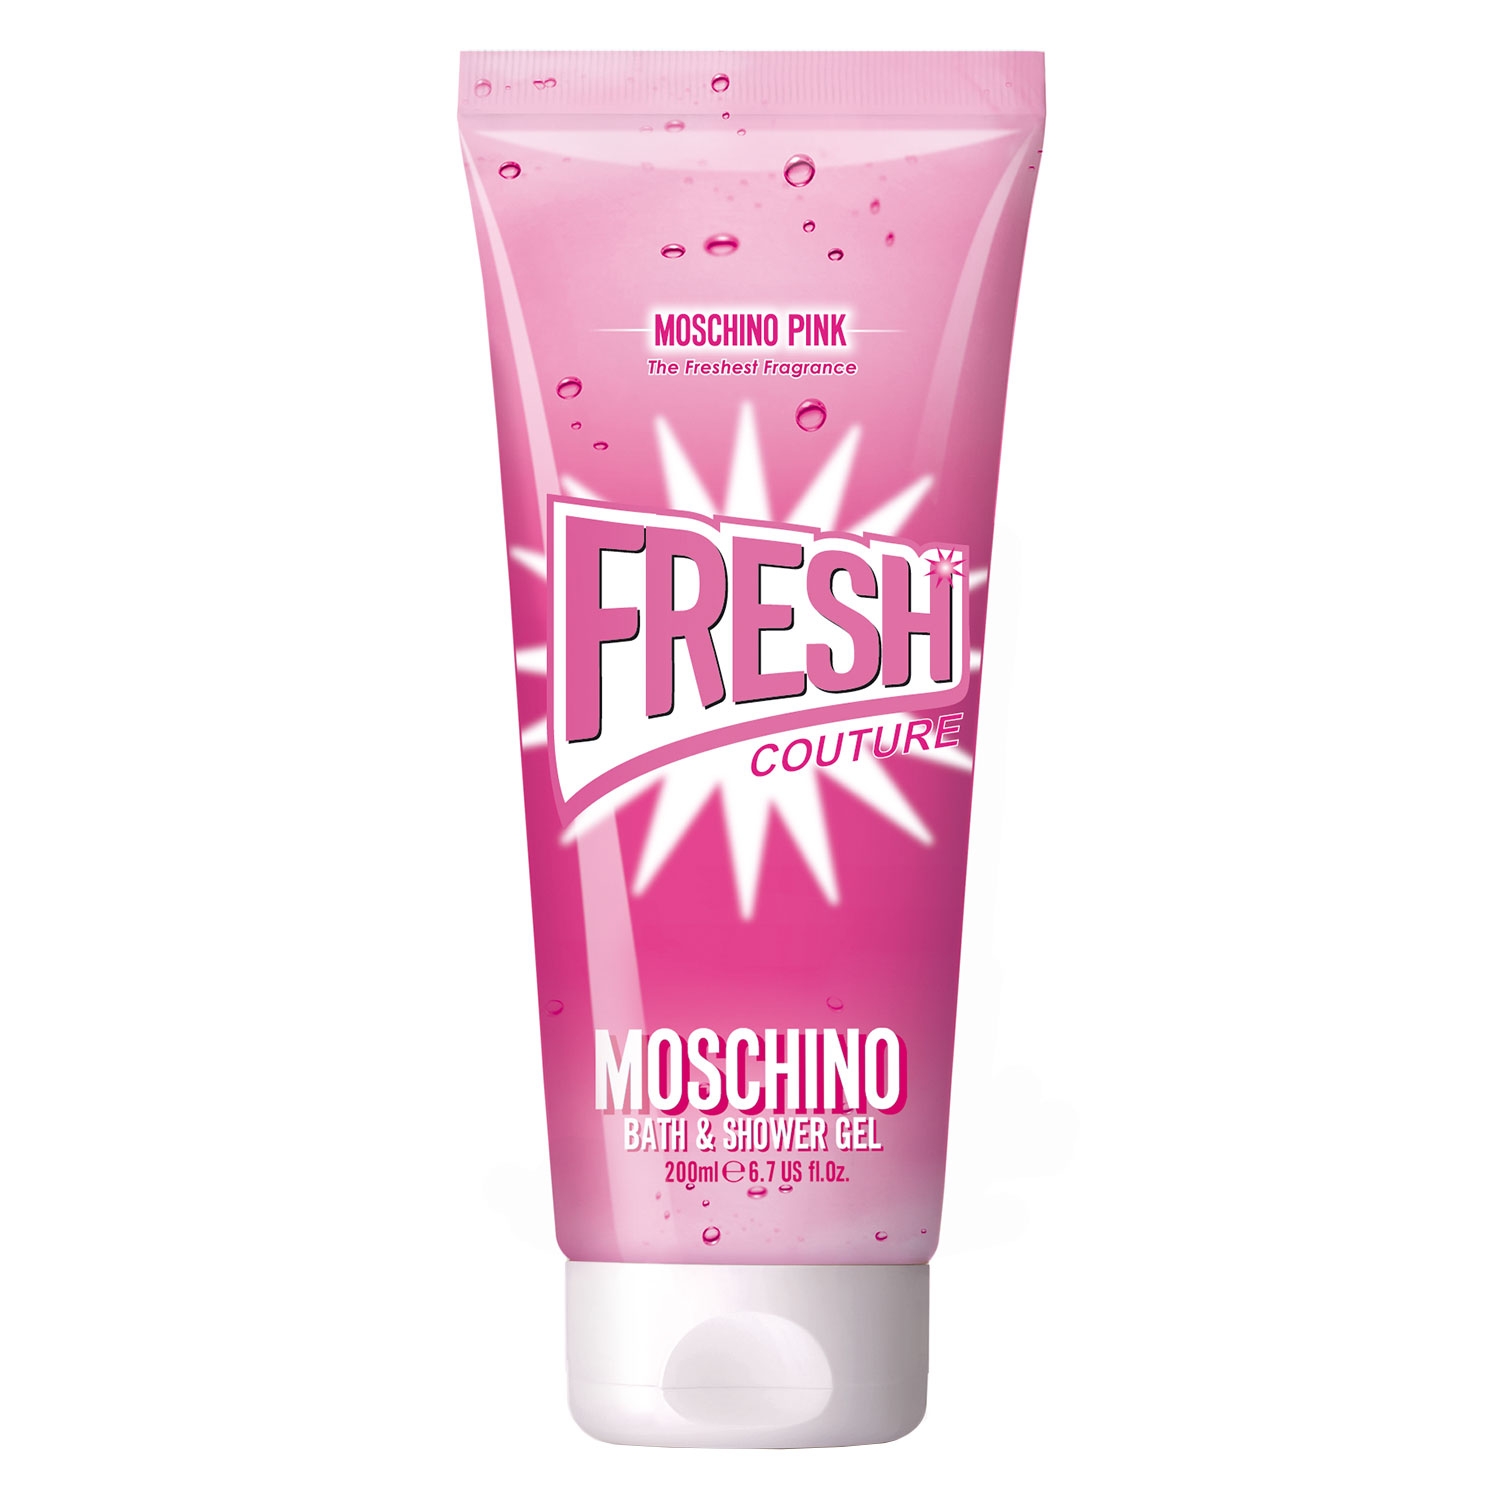 Produktbild von Pink Fresh Couture - Bath & Shower Gel